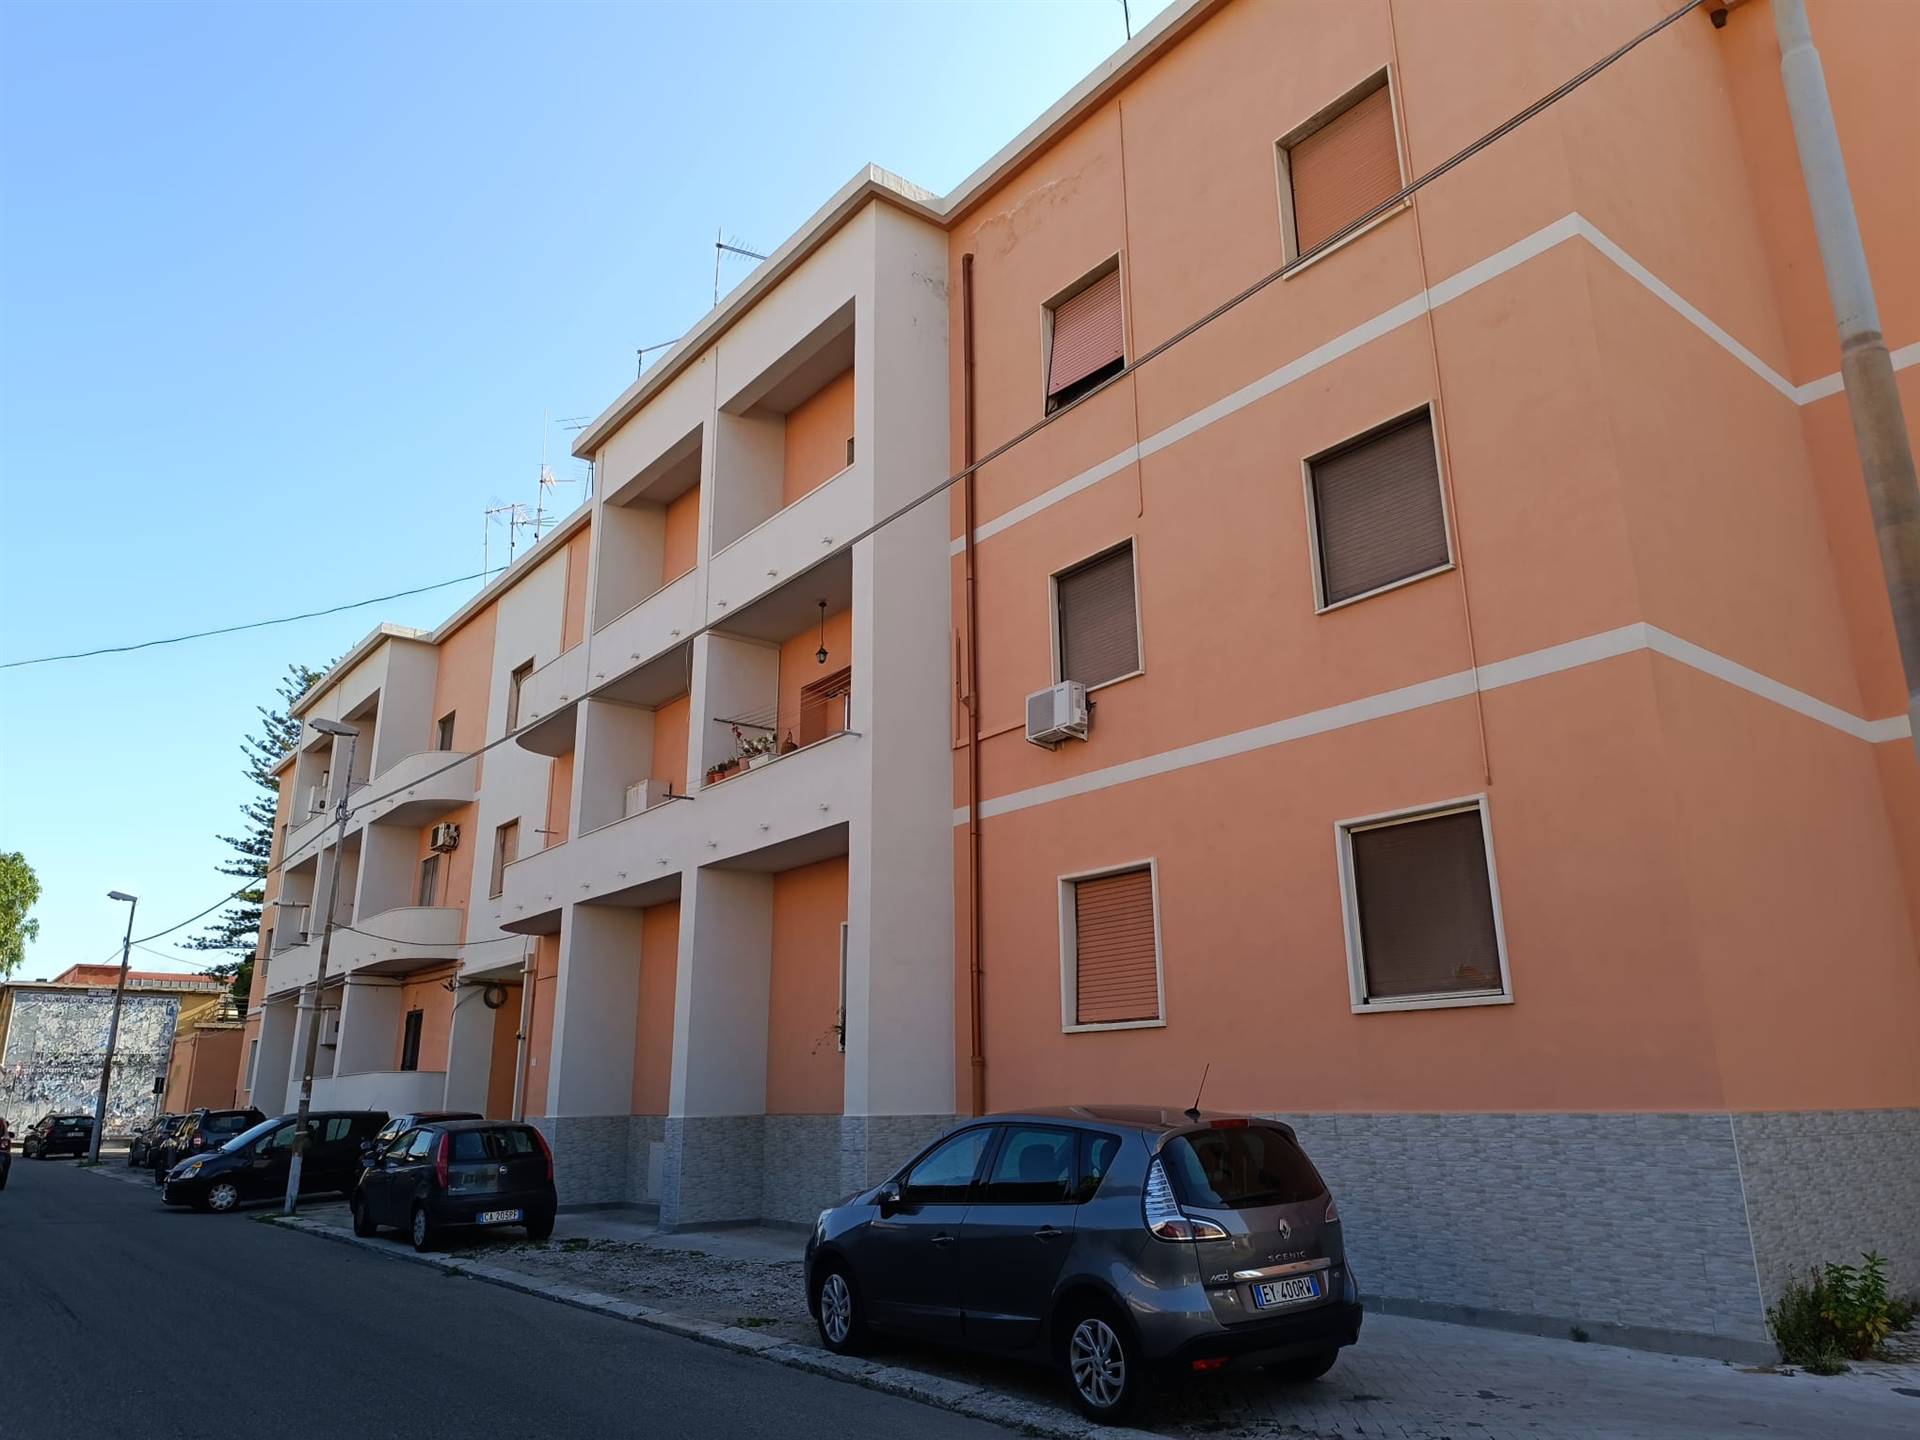 Appartamento abitabile in zona Via Galileo Galilei a Reggio Calabria